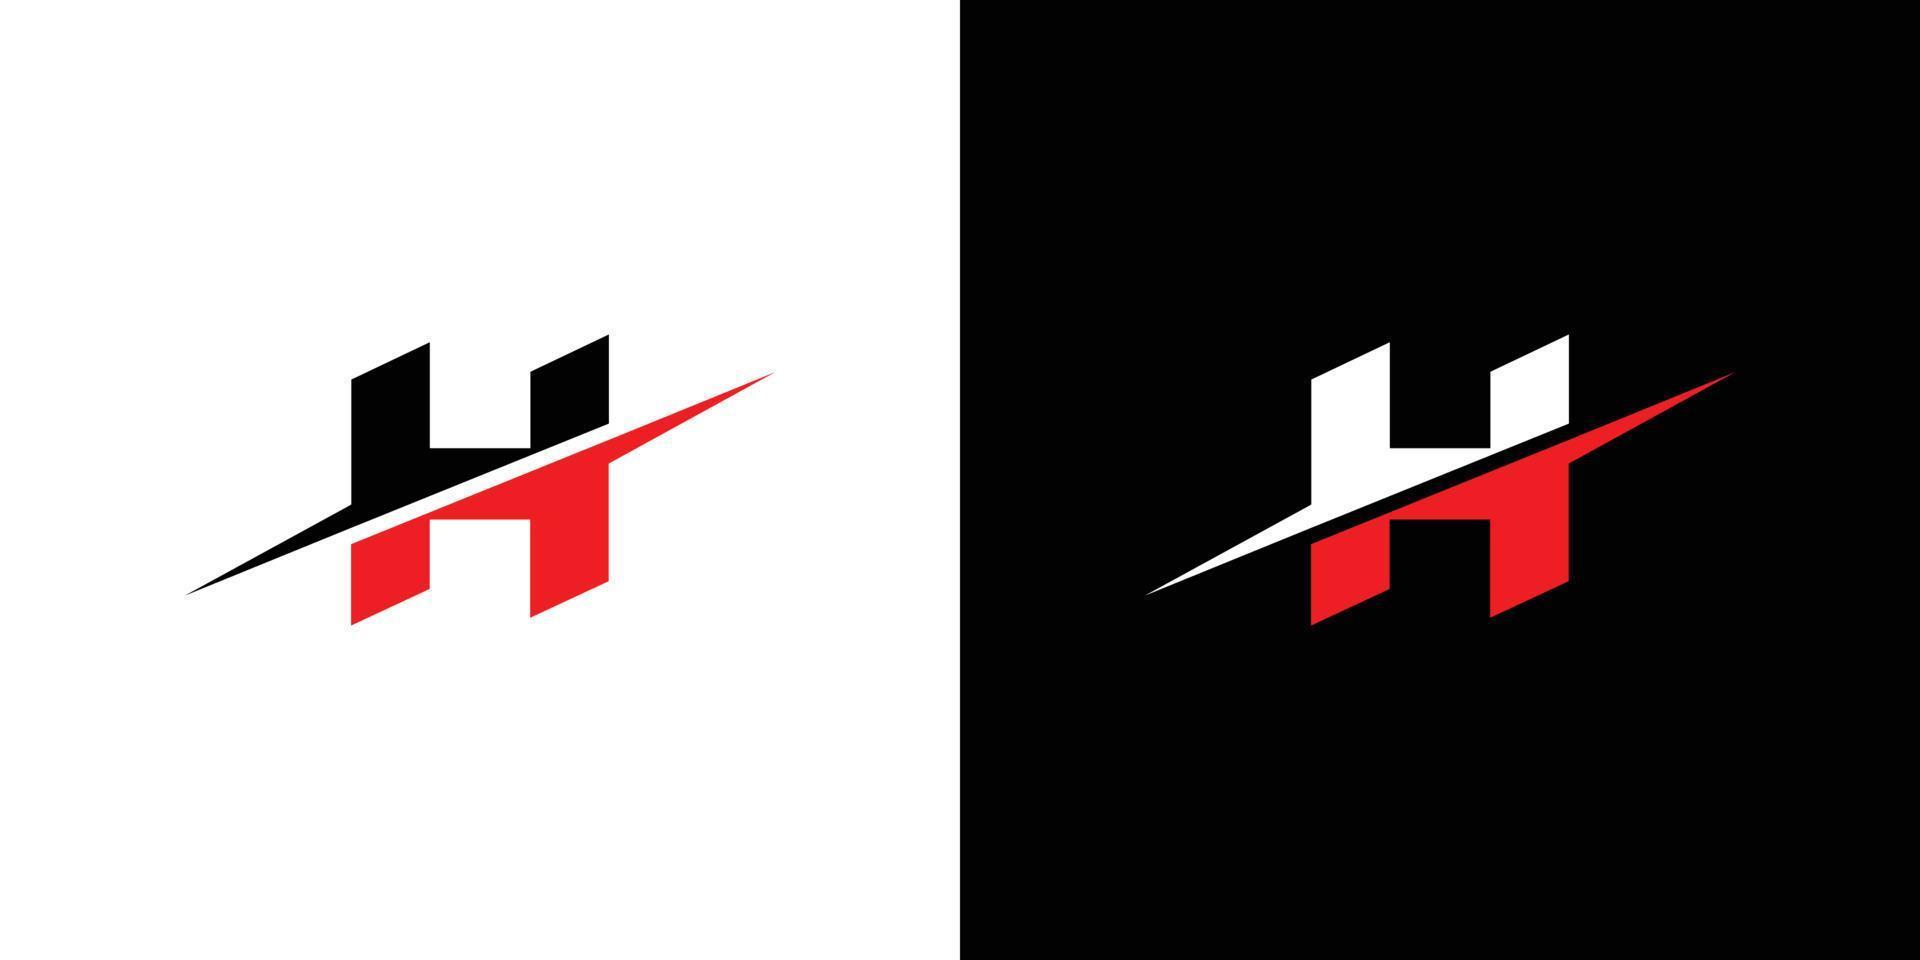 design de logotipo moderno e forte com as iniciais da letra h vetor